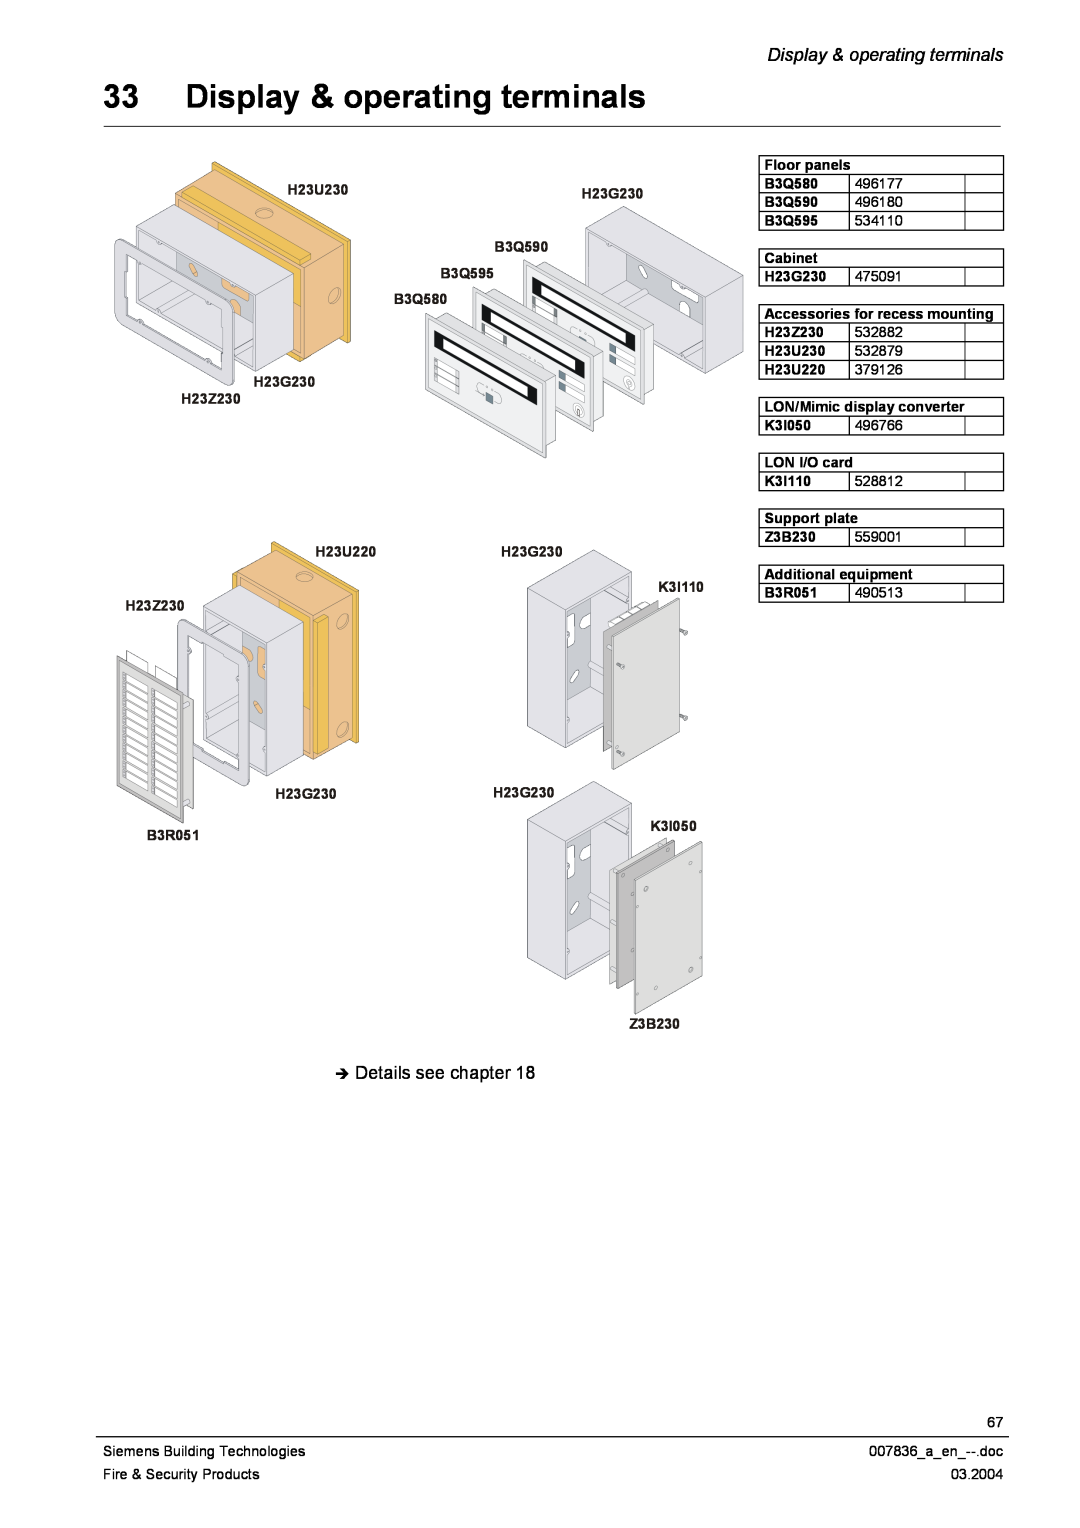 Siemens FC700A Display & operating terminals, H23U230, B3Q590 B3Q595 B3Q580 H23G230 H23Z230, H23G230H23G230, B3R051 